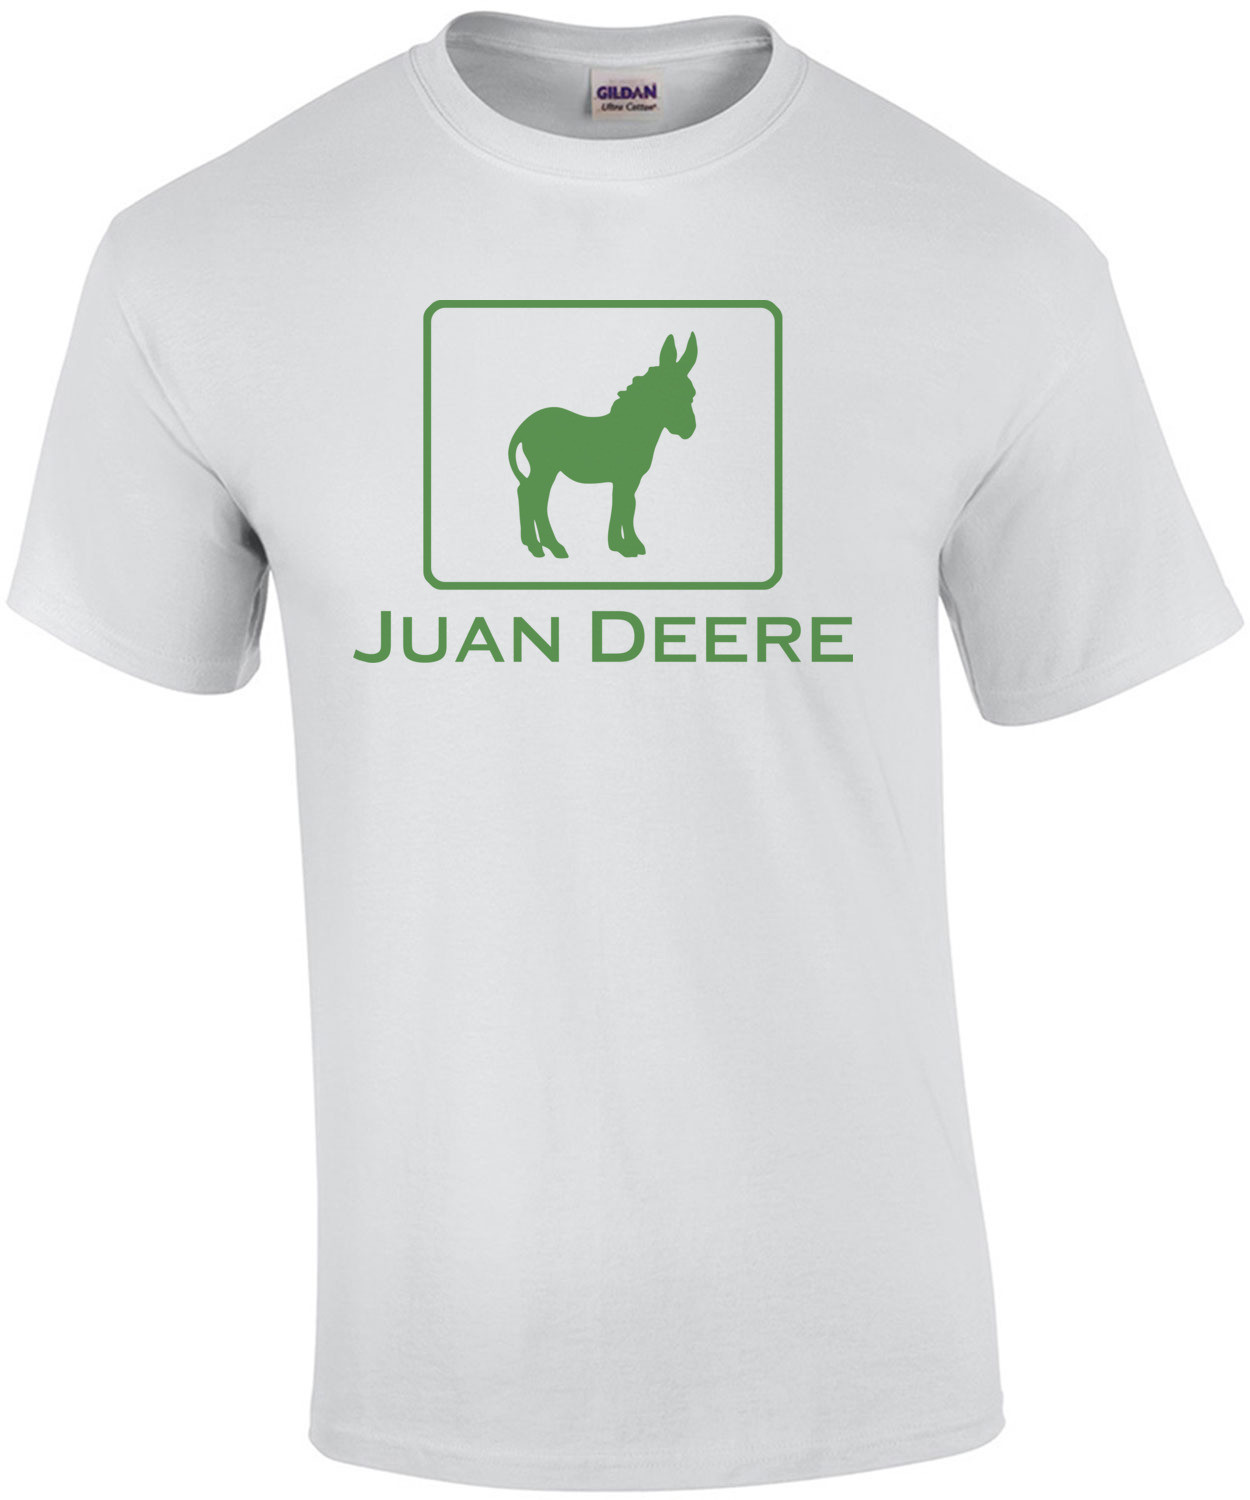 Juan Deere